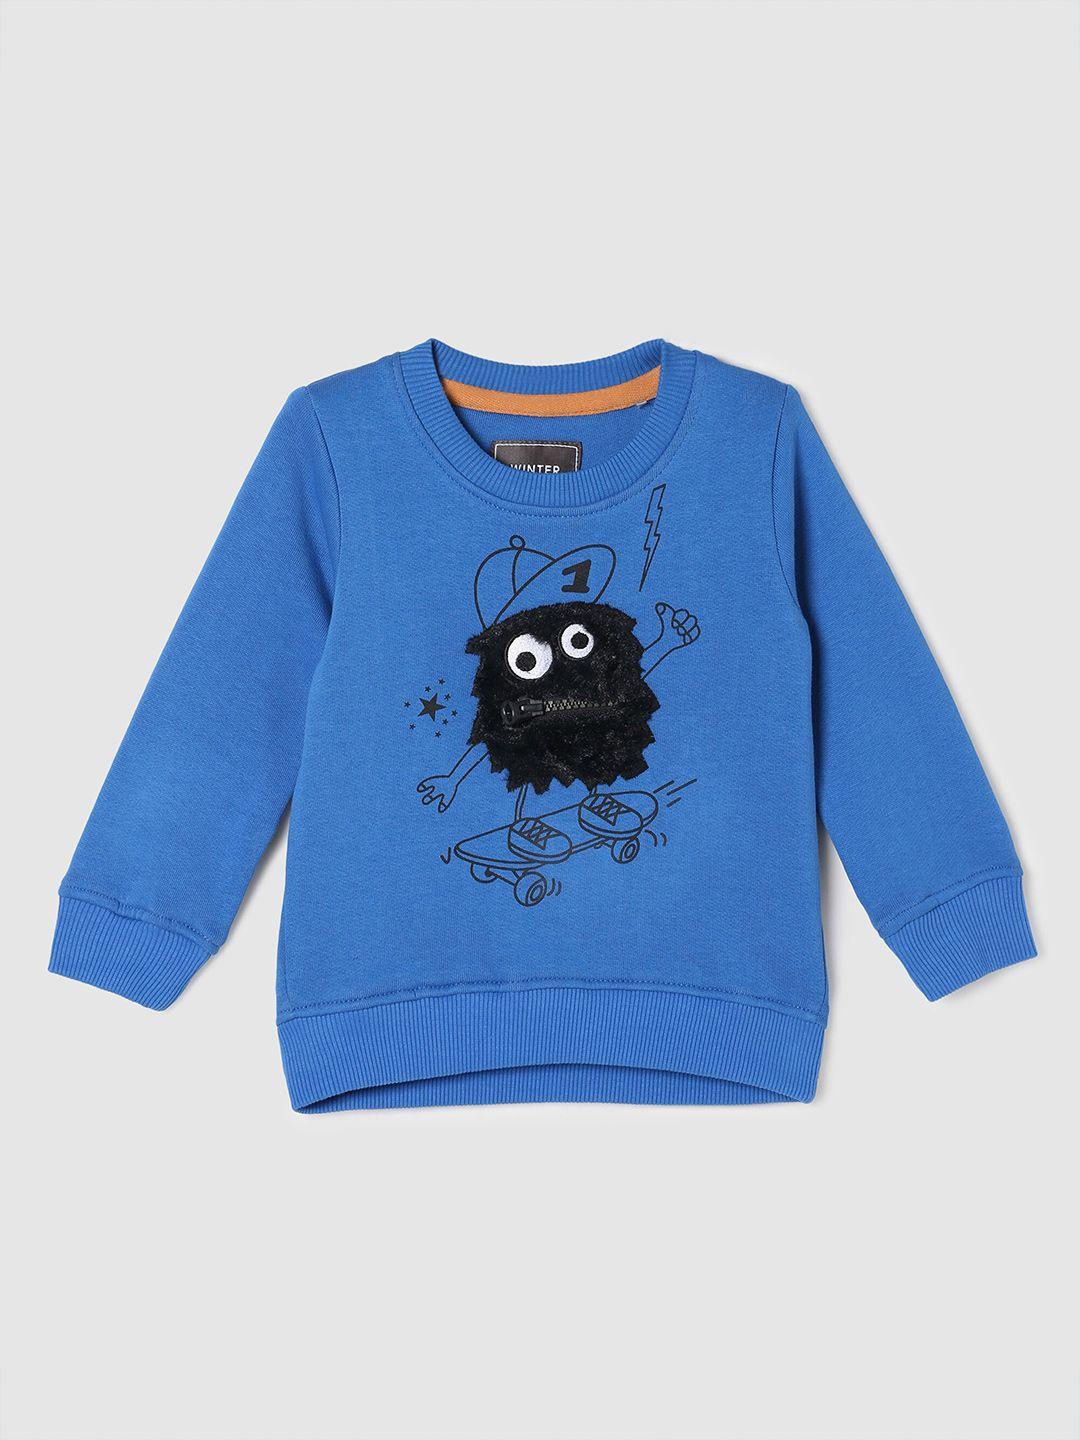 max-boys-blue-graphic-printed-sweatshirt